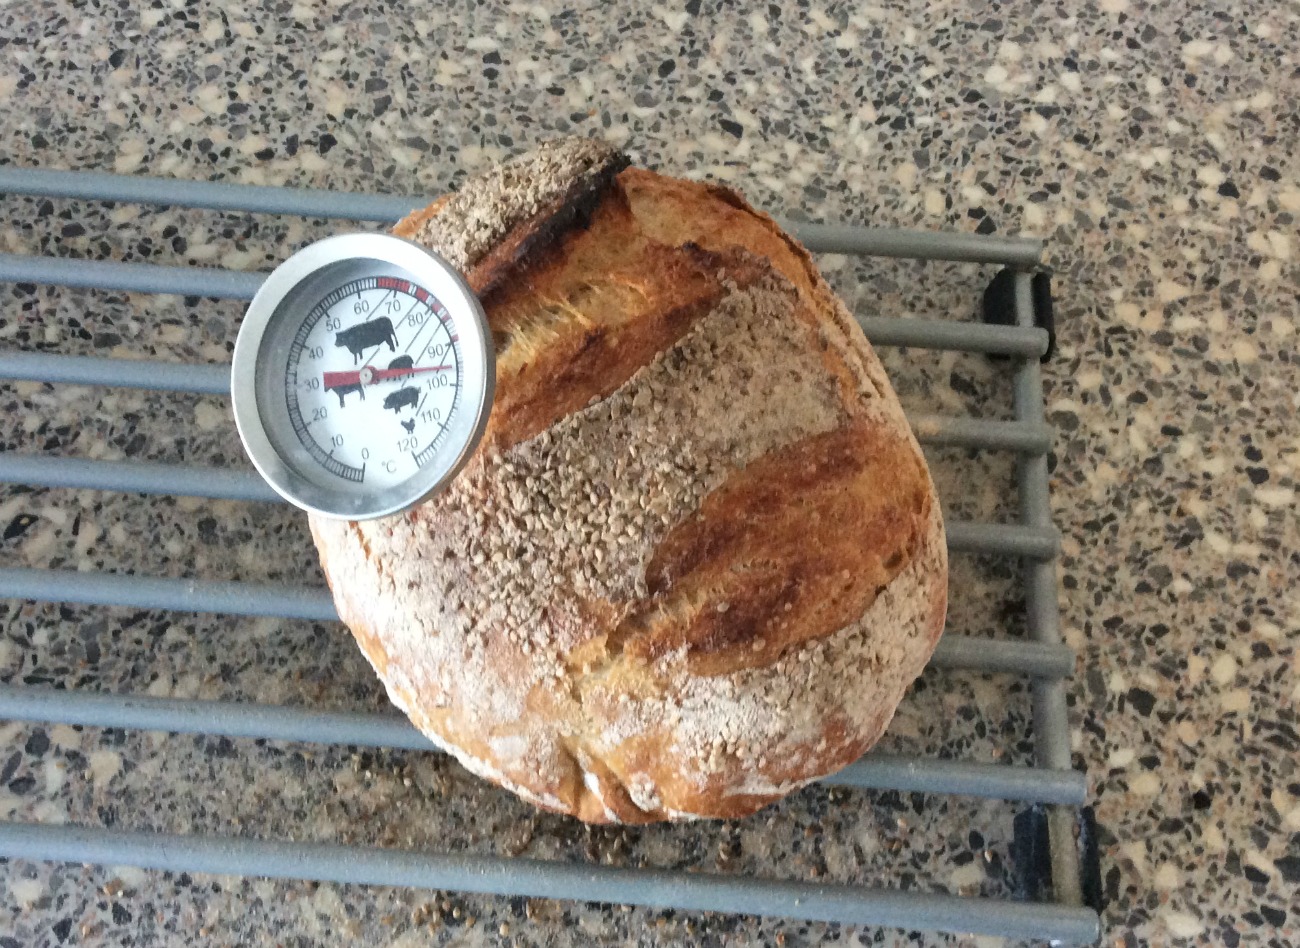 brood bakken zonder kneden